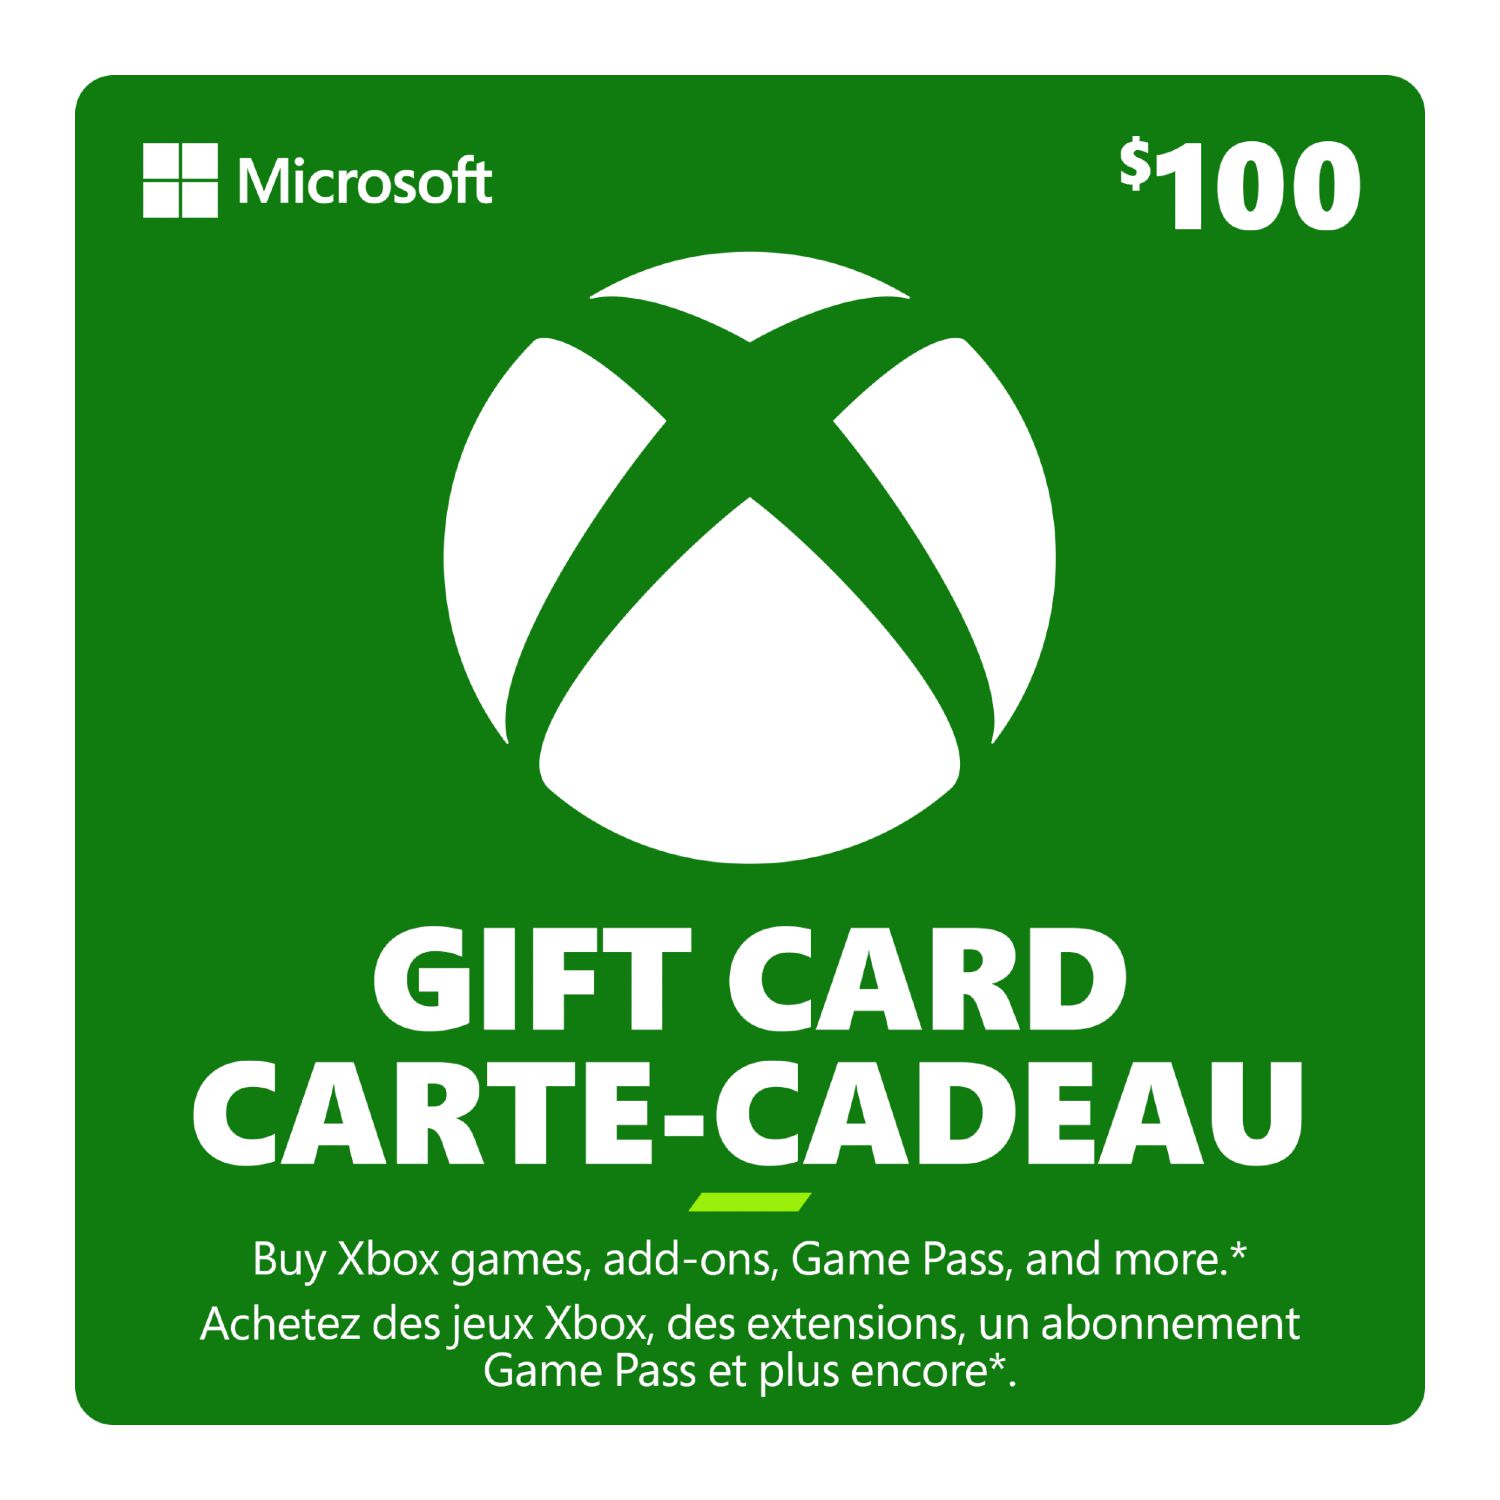 Vous ne pouvez plus acheter de cartes-cadeaux Xbox en utilisant des cartes-cadeaux   ou le solde de la carte-cadeau : r/xbox